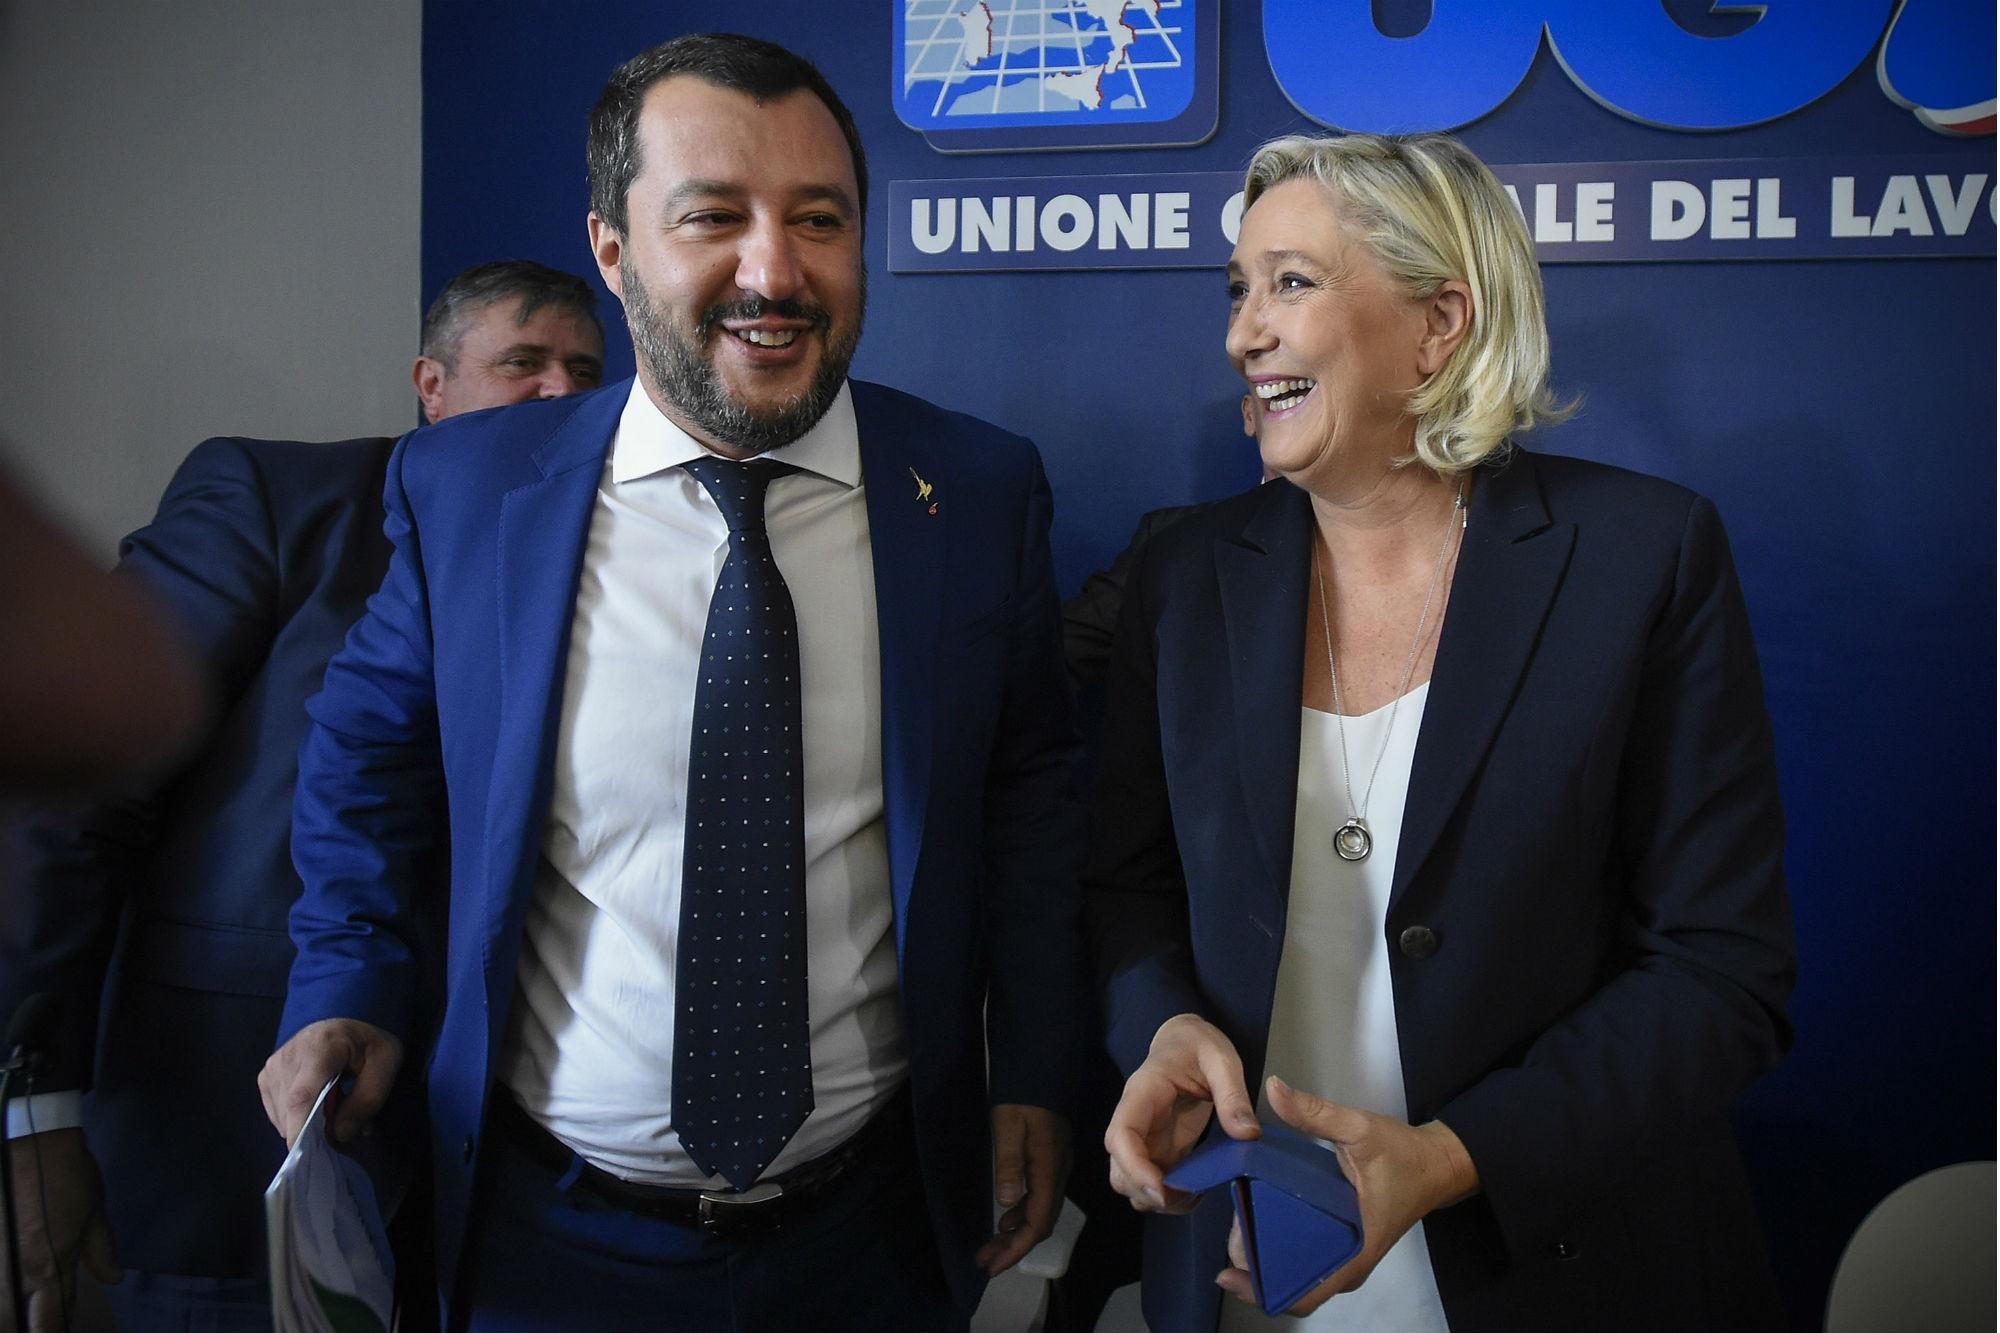 Le Pen peggio di Salvini: "Il Pass vaccinale condanna alla morte sociale i francesi no vax"